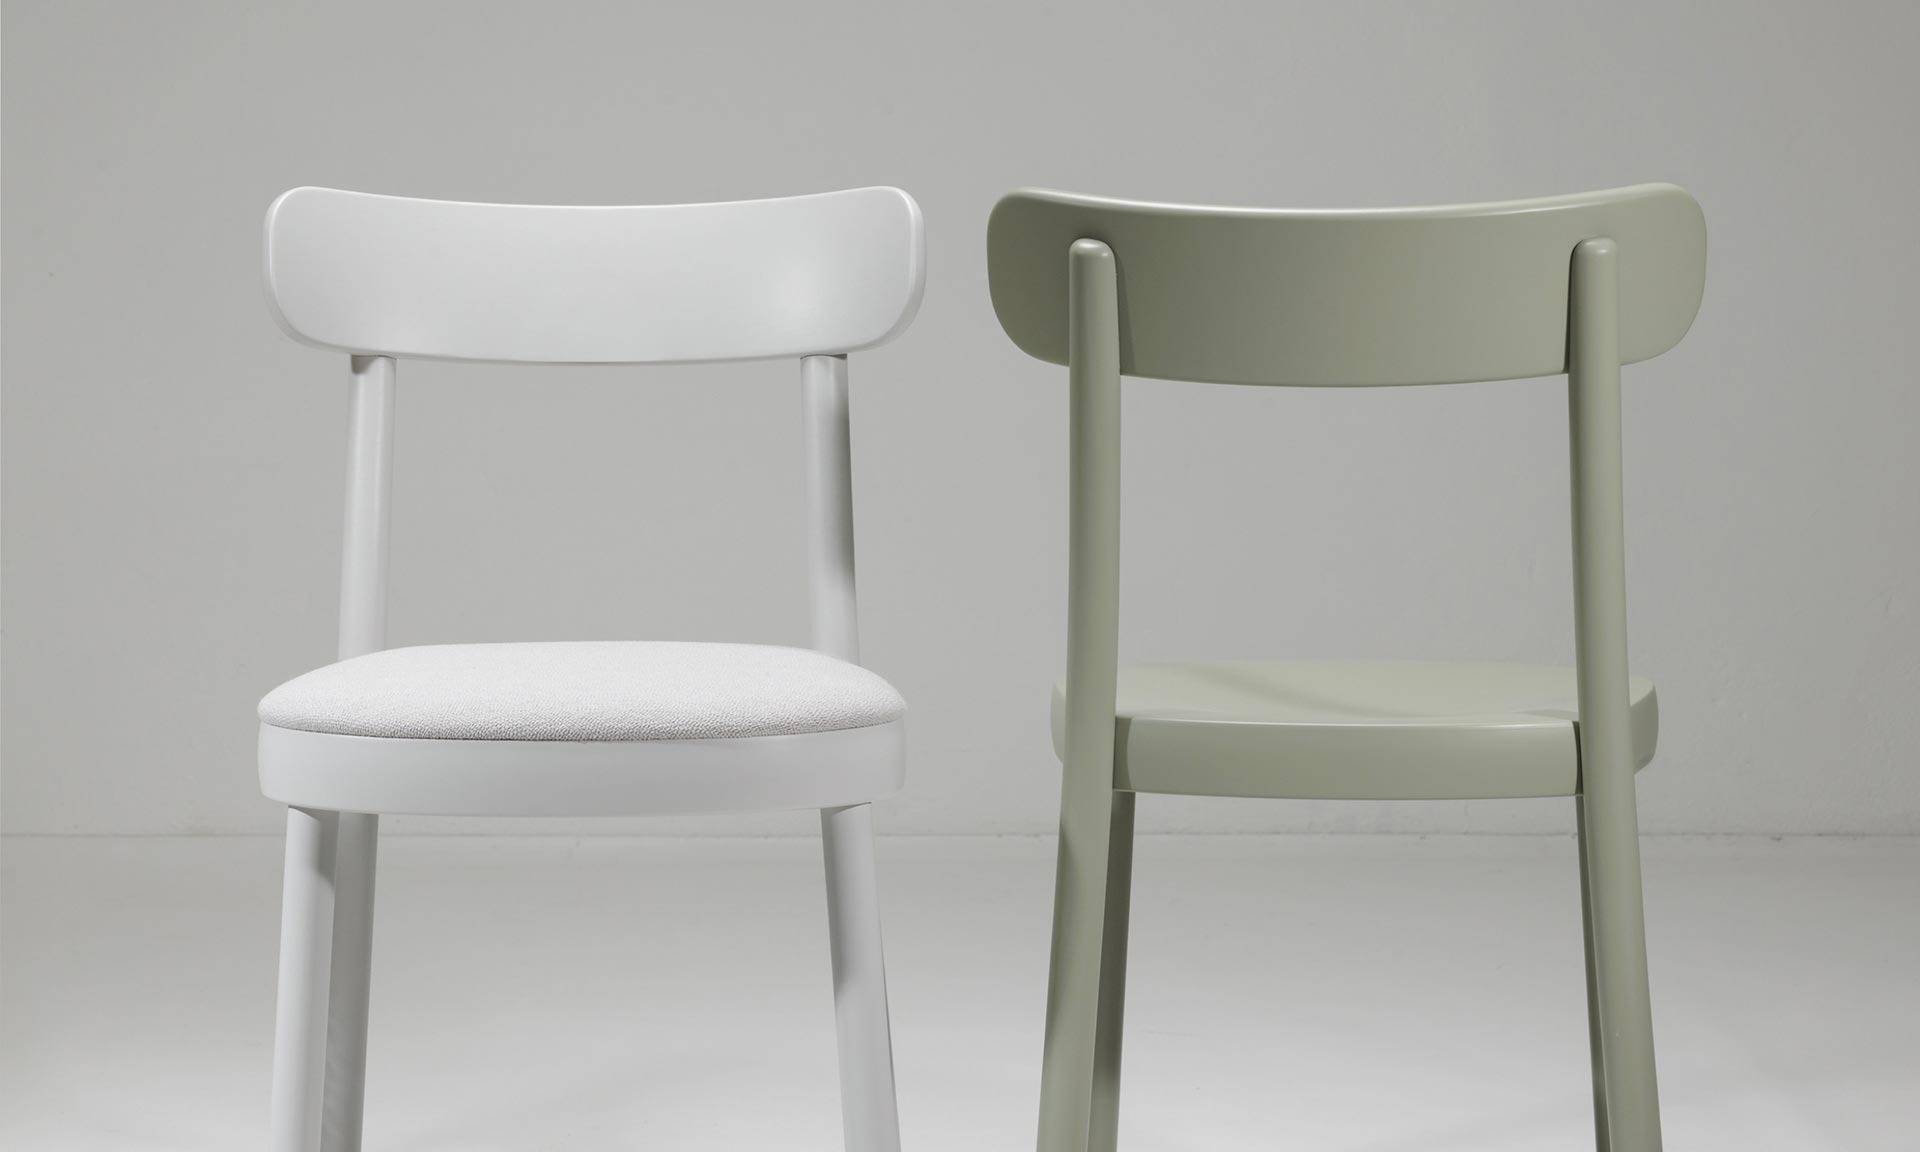 Ton ha presentato una nuova sedia La Zitta dalla forma semplice realizzata in legno curvato a mano – DesignMag.cz